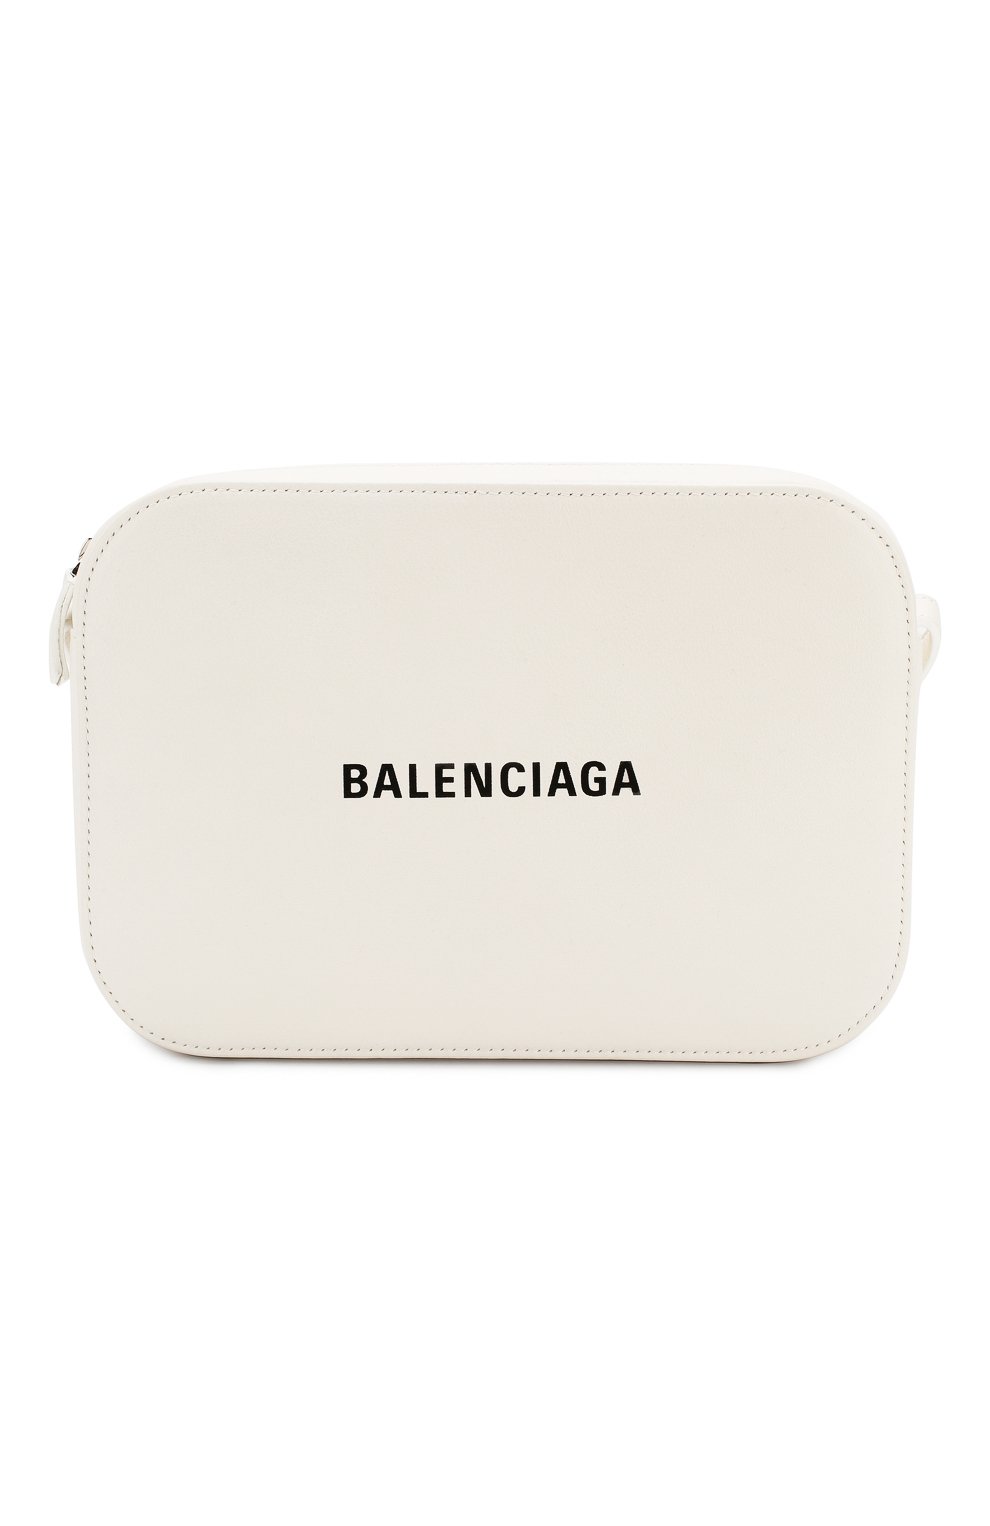 Balenciaga цум. Сумка Balenciaga белая. Маленькая сумка Balenciaga. ЦУМ Баленсиага сумка белая.